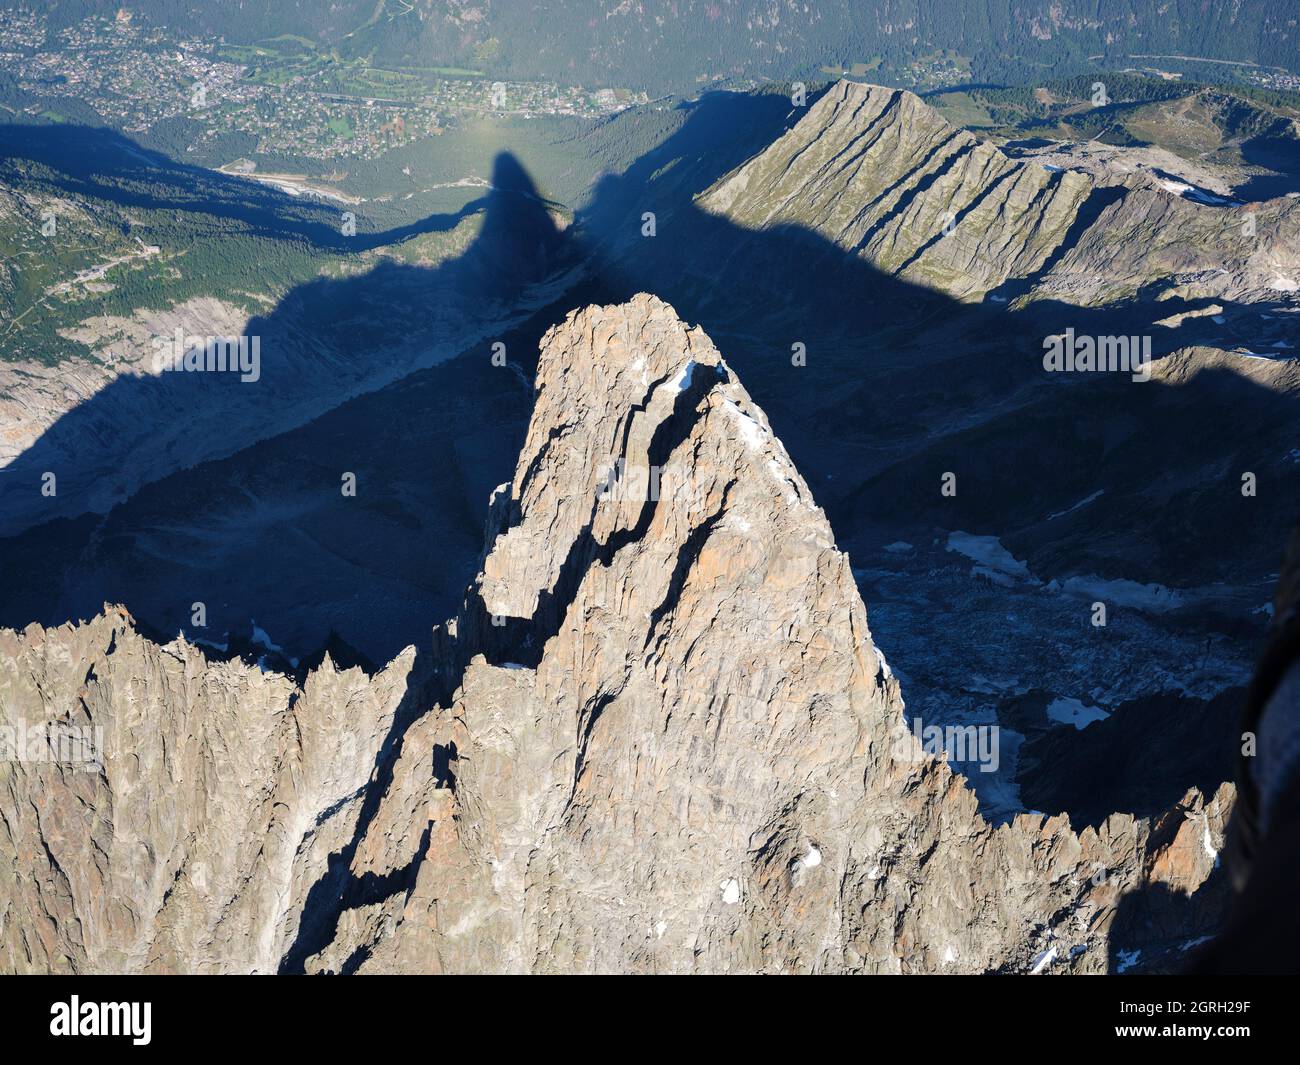 VUE AÉRIENNE. Face sud-est des Drus (3754 mètres de haut) avec son ombre projetée sur la vallée de Chamonix (1100 mètres). Haute-Savoie, France. Banque D'Images